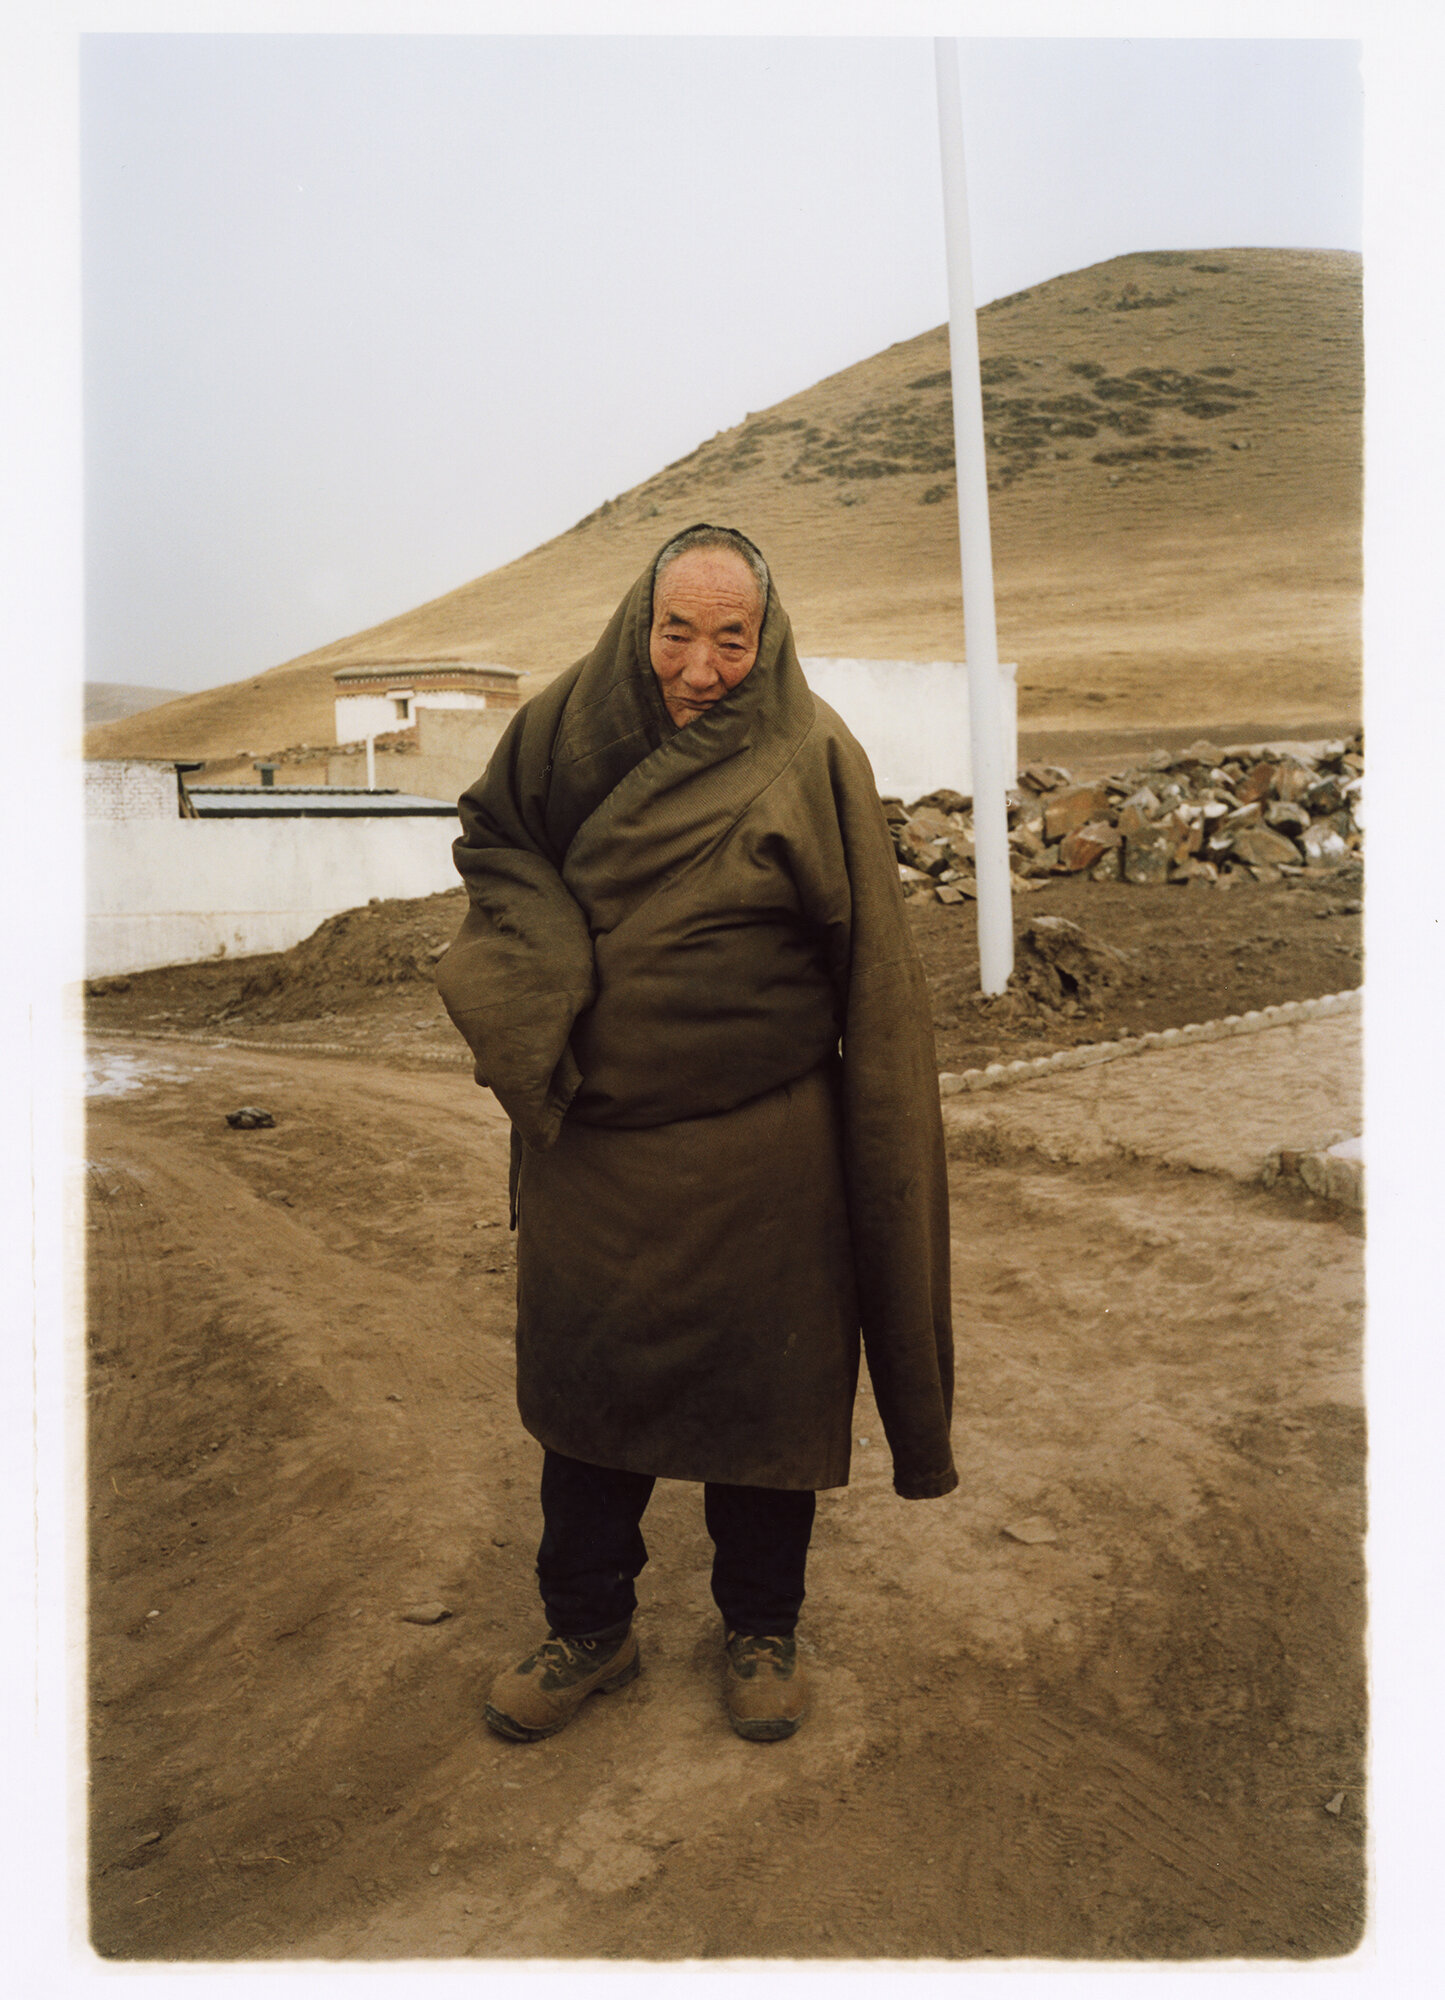 Morning Rituals II, Ritoma, Tibet, 2019